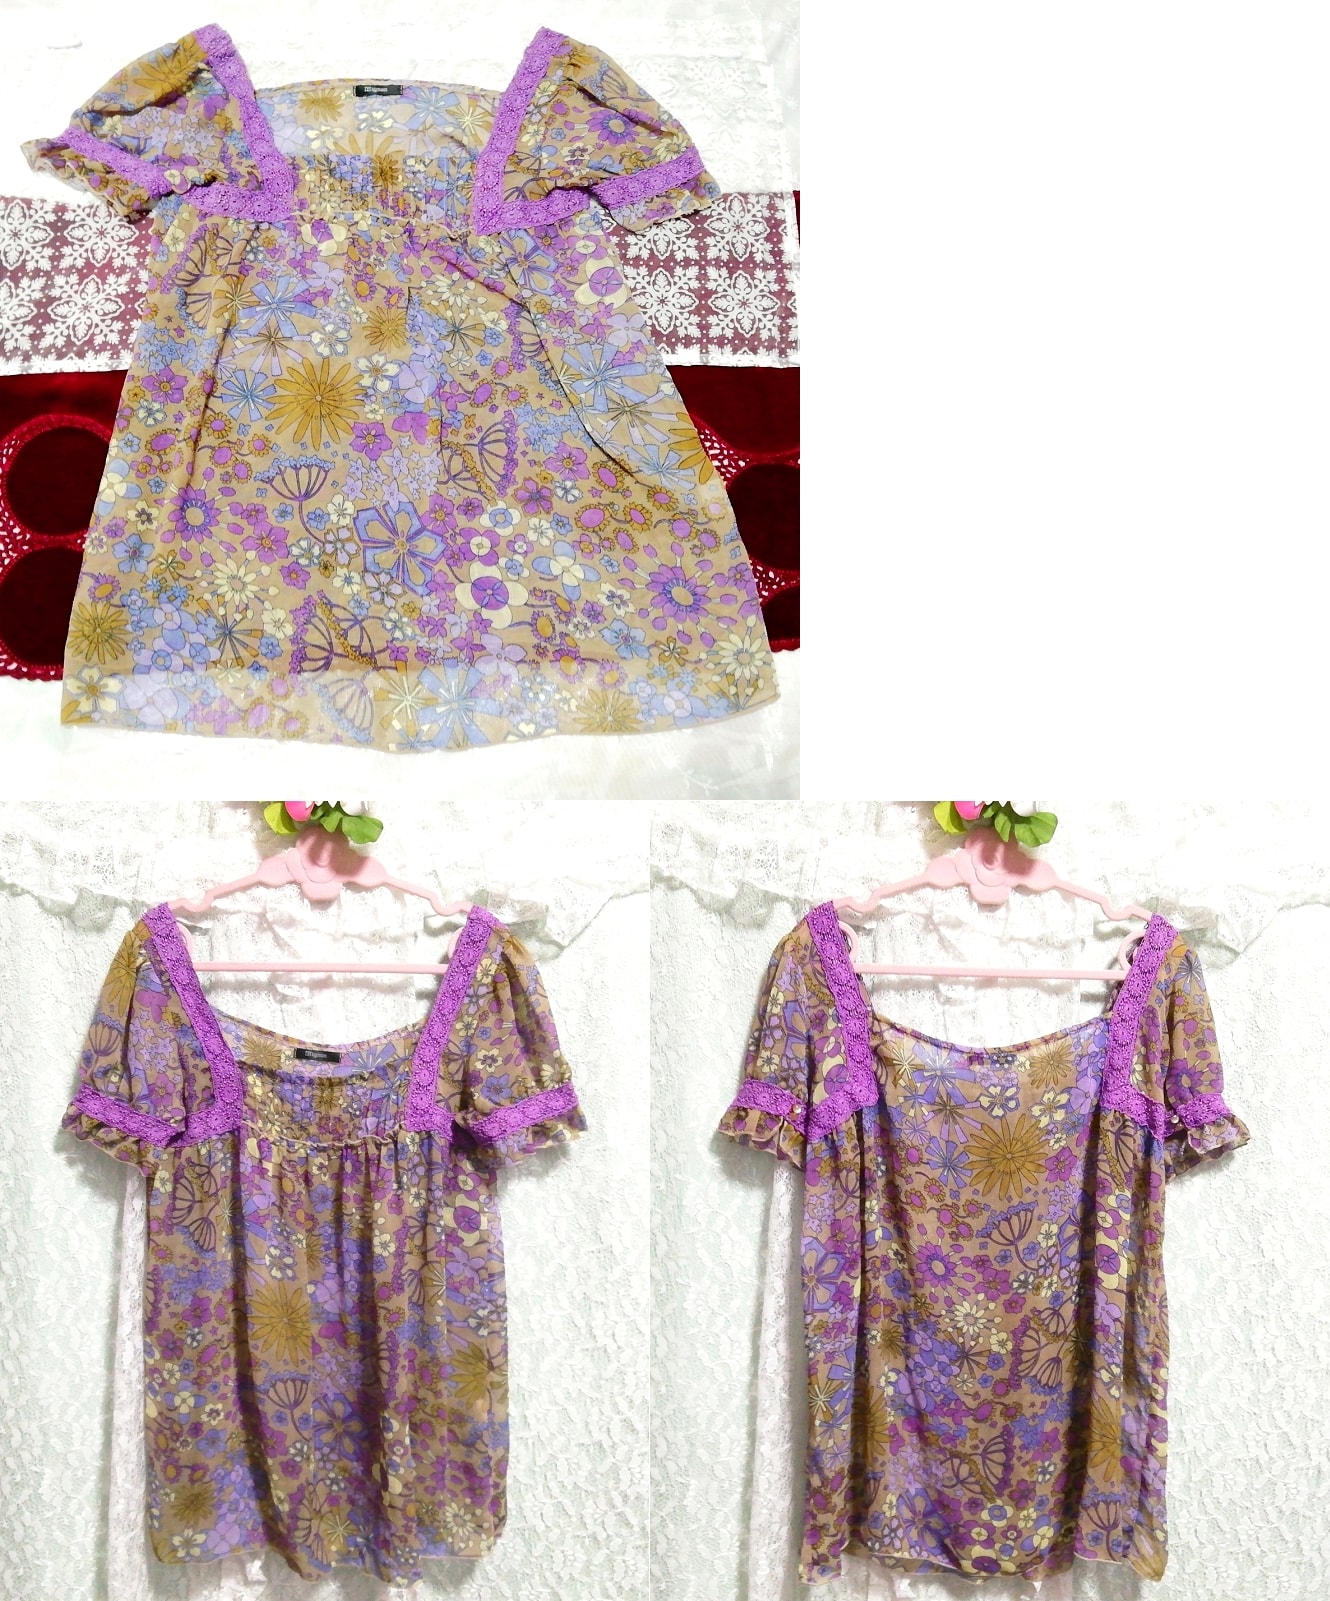 紫色蕾丝花卉民族图案雪纺长款睡衣, 外衣, 短袖